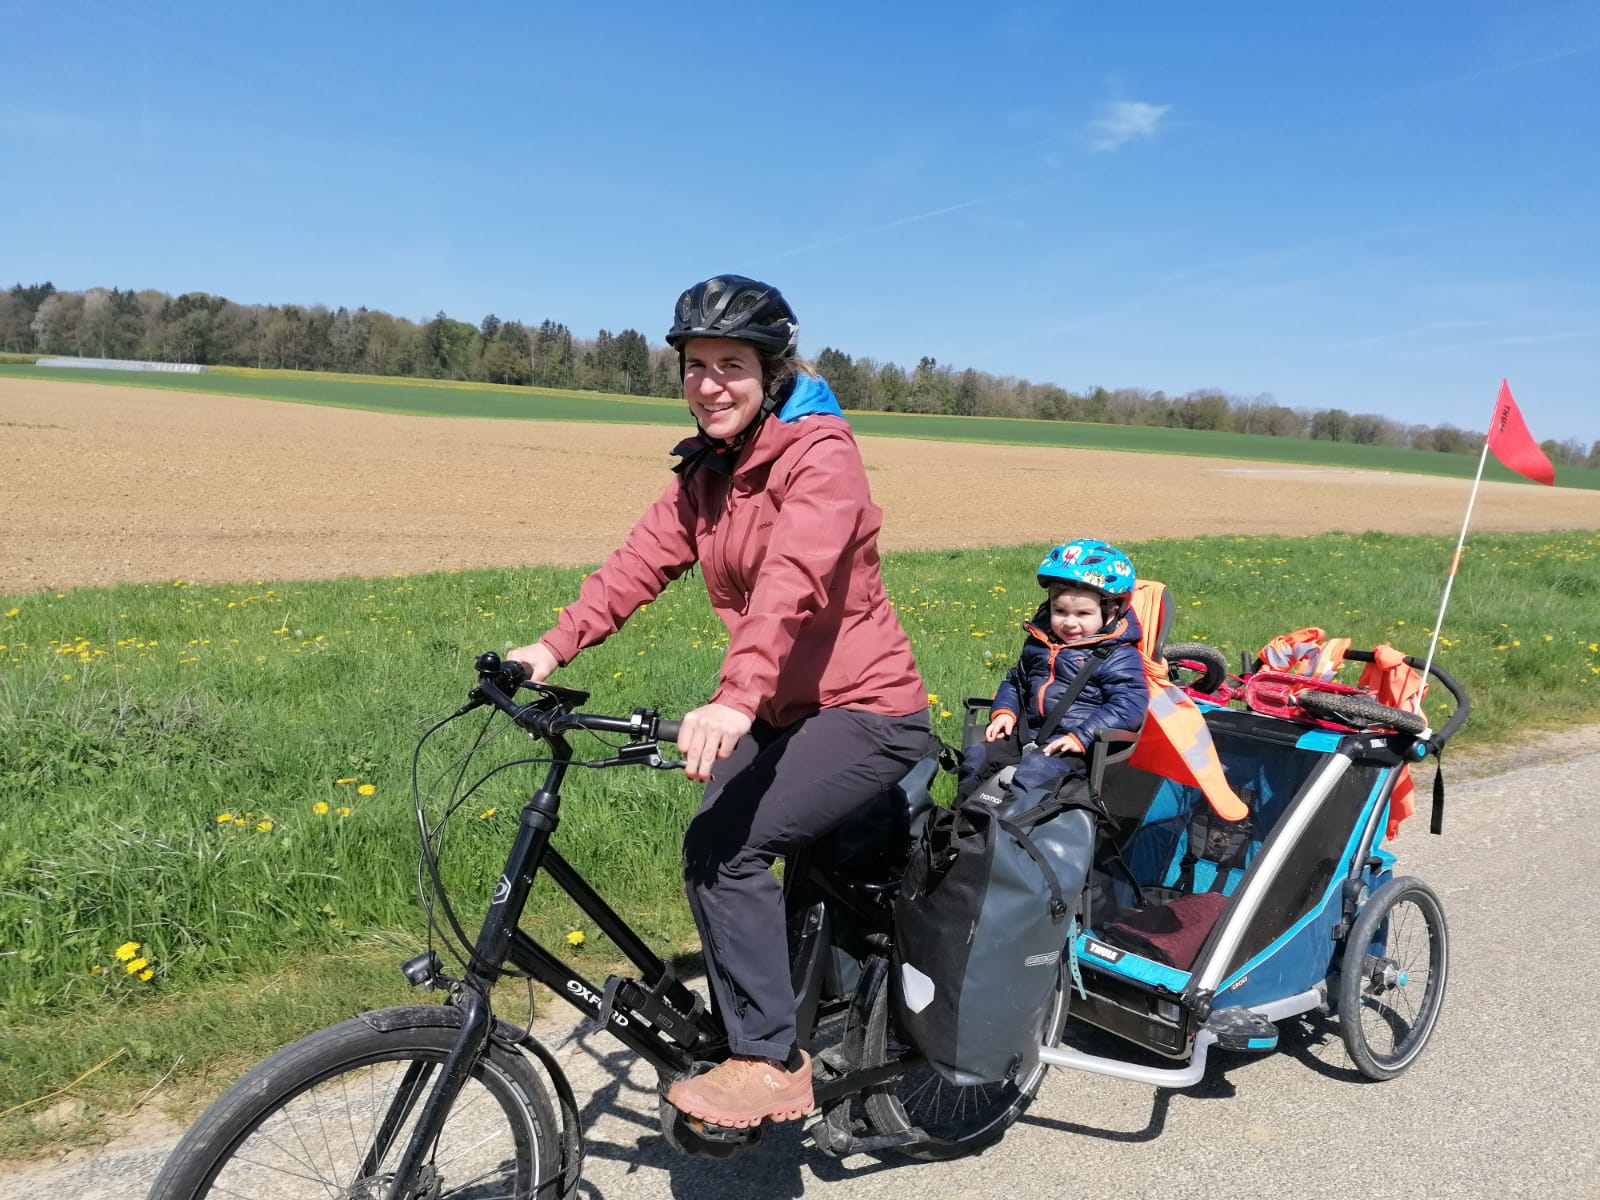 Transporter ses enfants à vélo